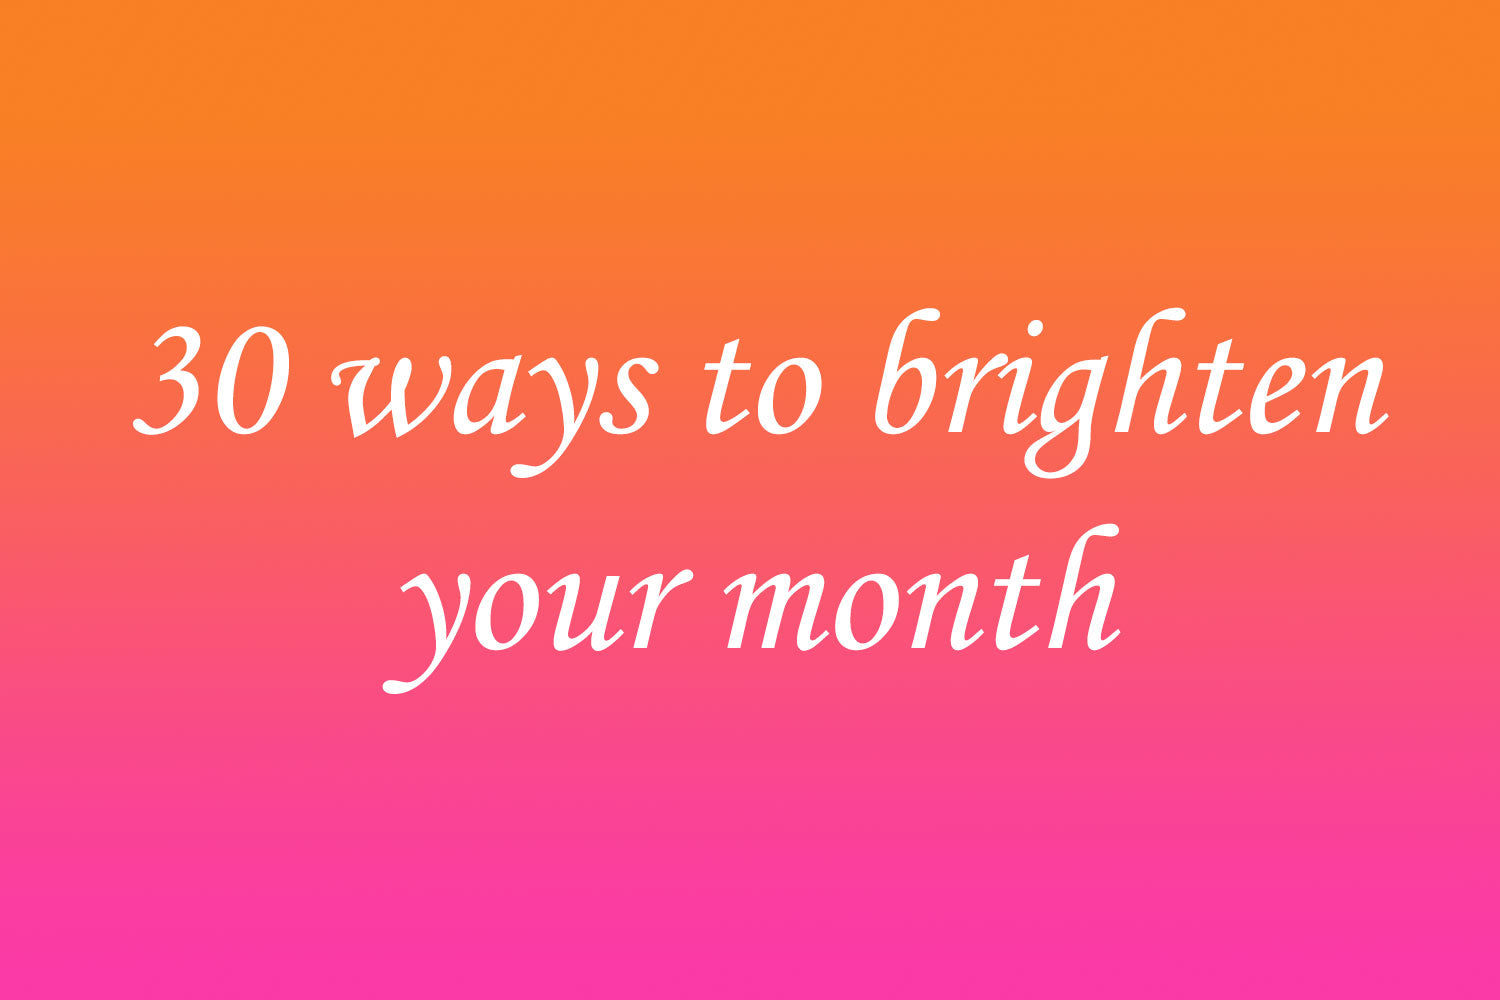 30 ways to brighten your month